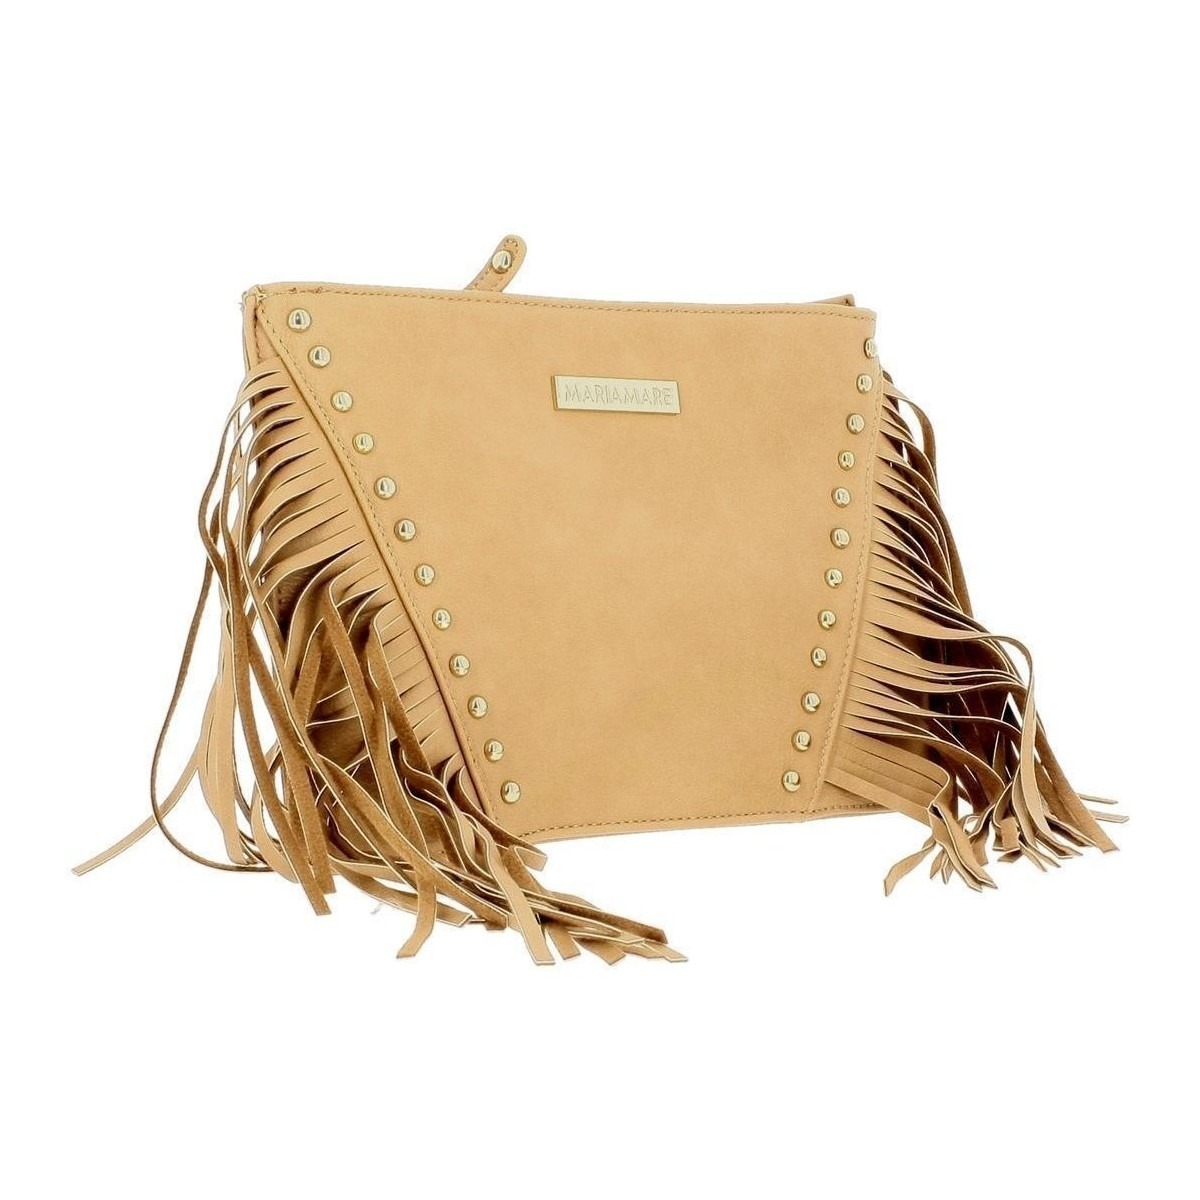 Spartoo - Woman Handbag in Brown - Maria Mare GOOFASH